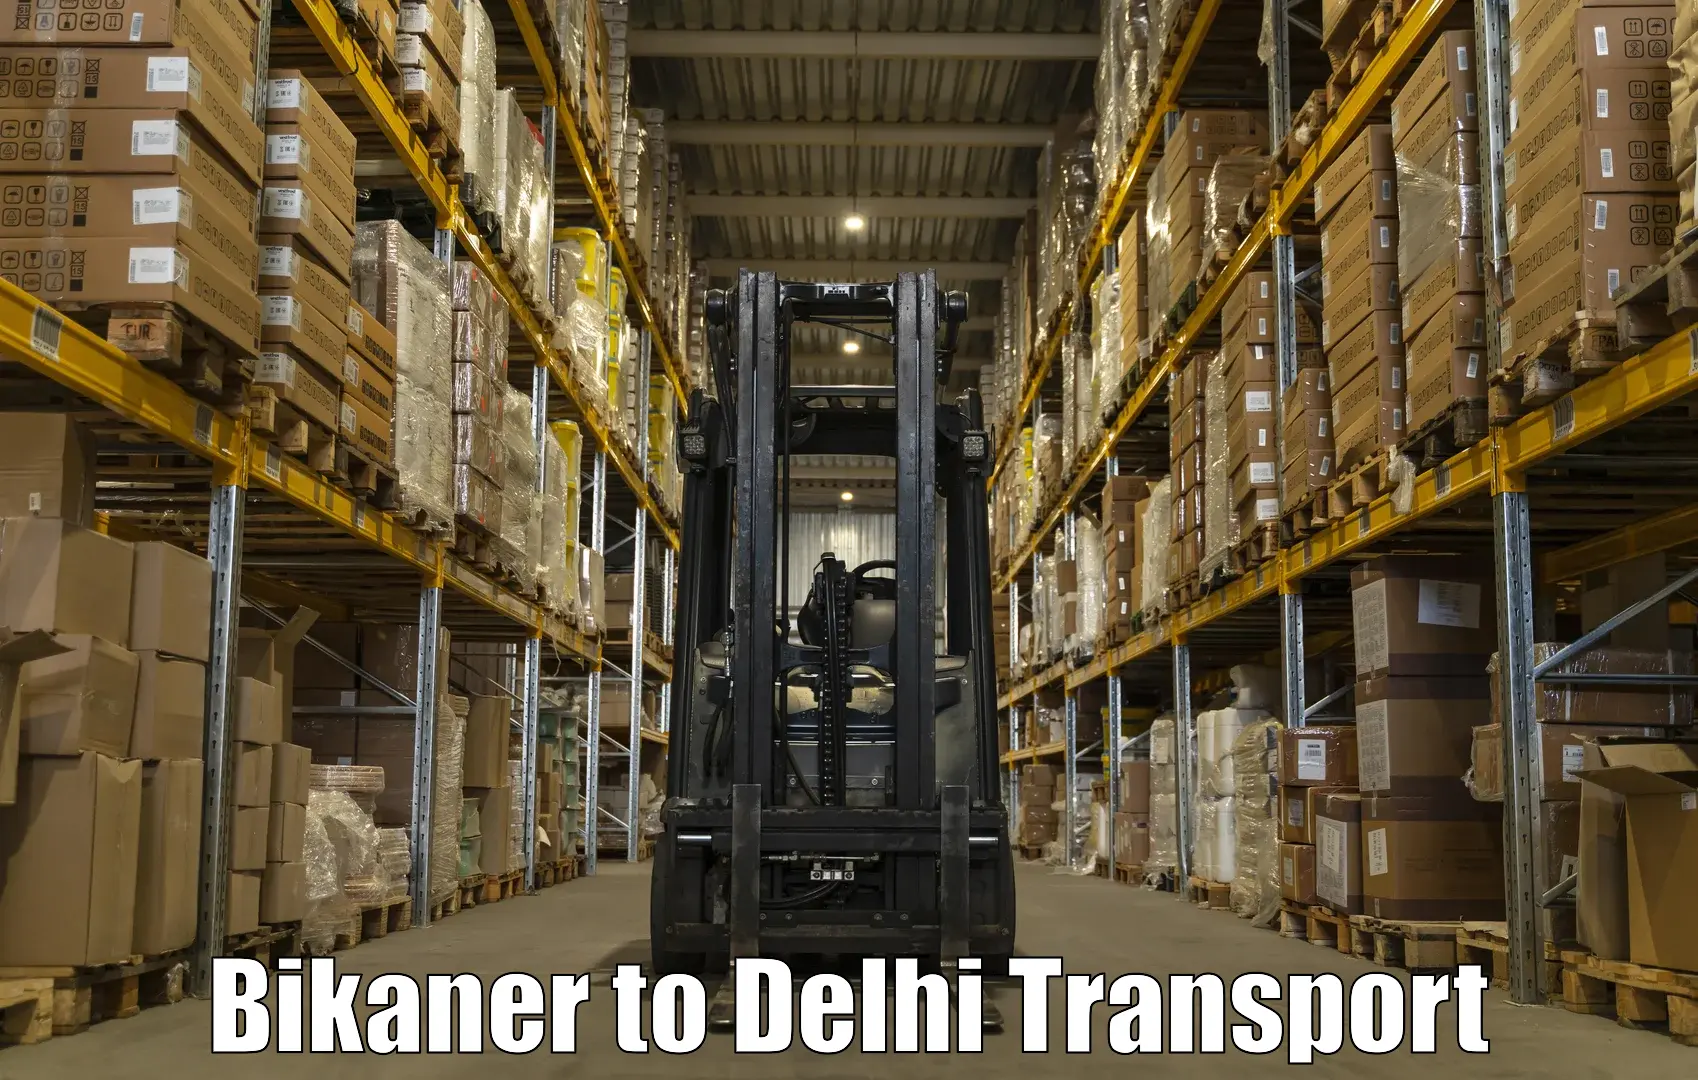 Cargo train transport services Bikaner to IIT Delhi